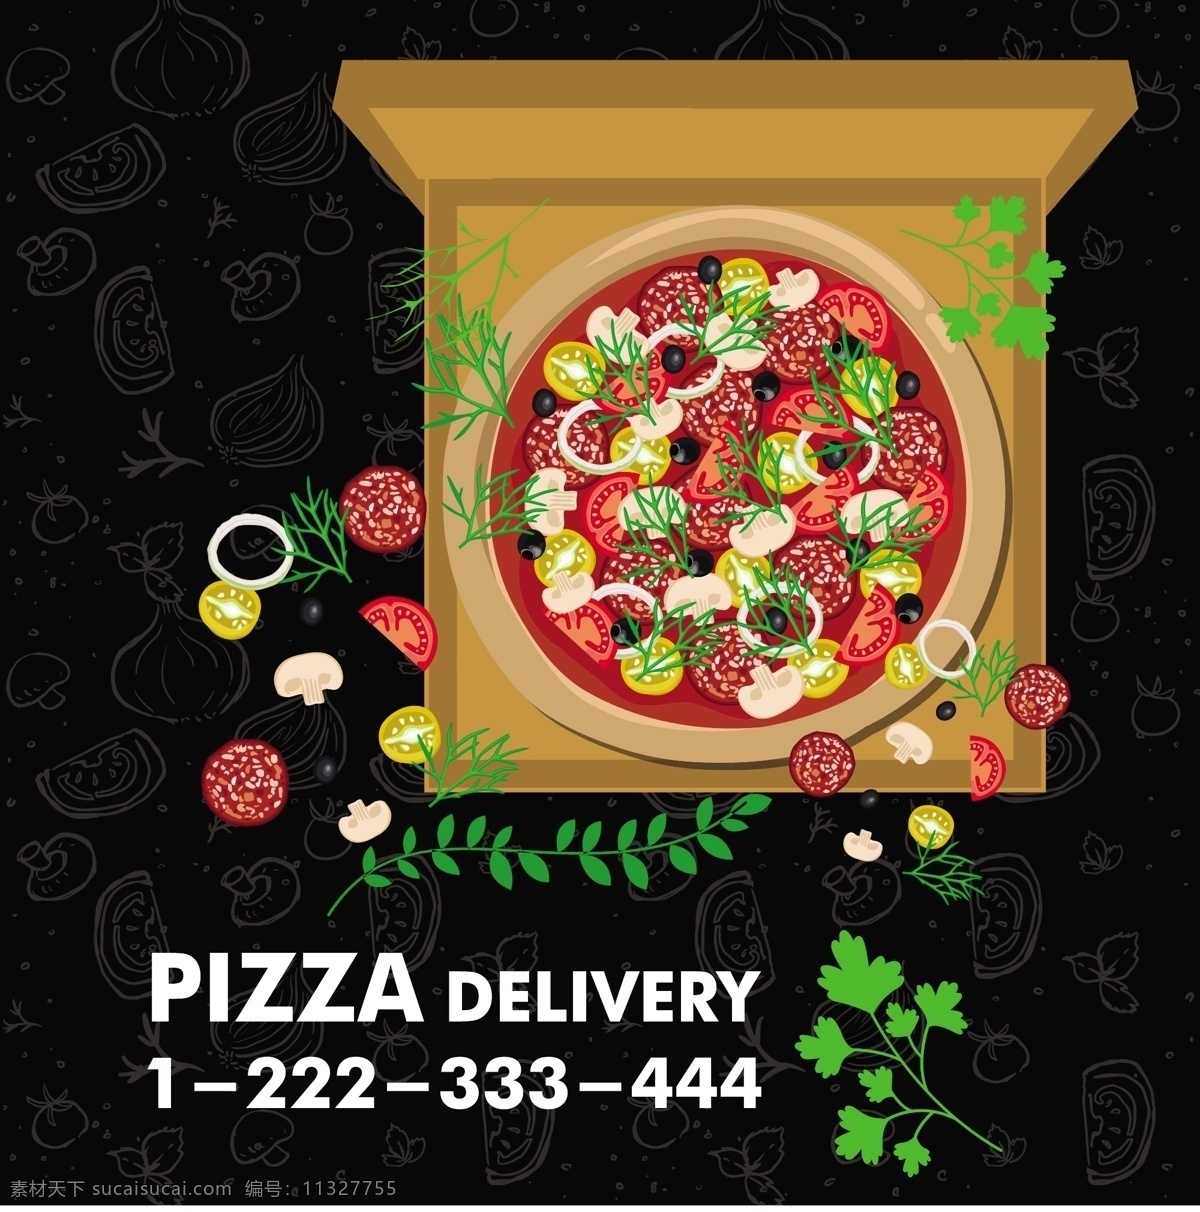 彩色 风格 背景 免费 矢量 比萨 促销 广告 披萨广告背景 水果披萨 风光 矢量背景